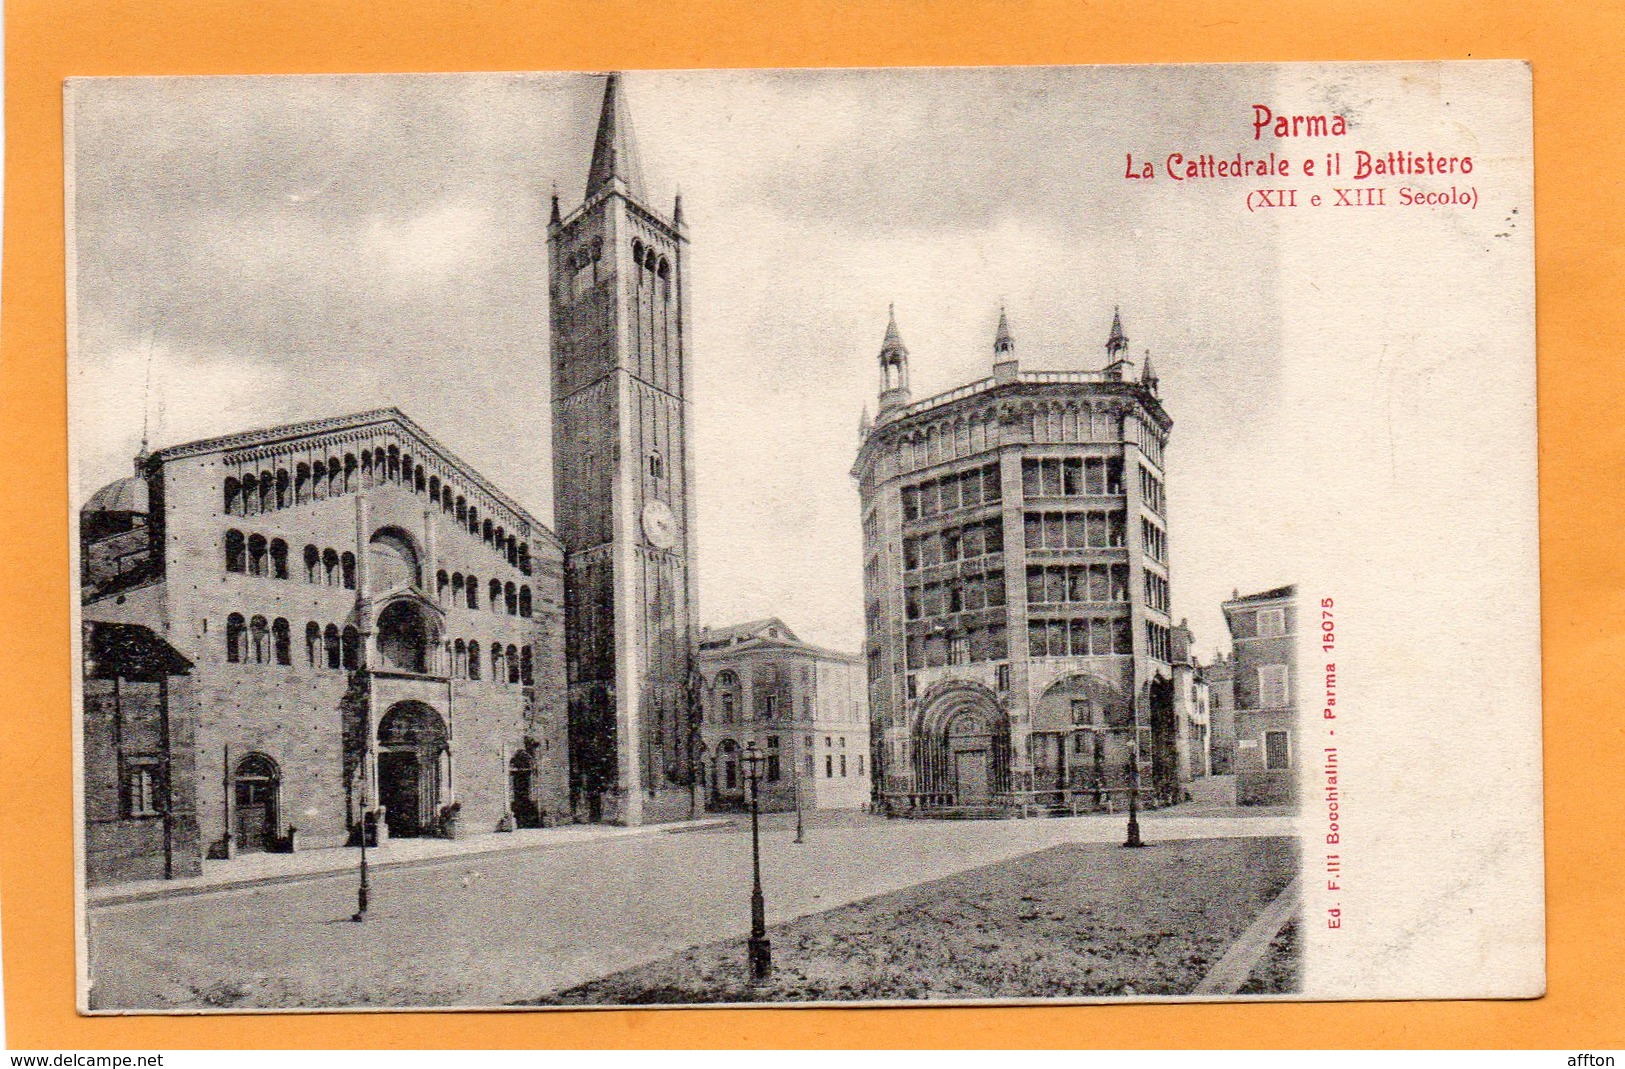 Parma Italy 1900 Postcard - Parma